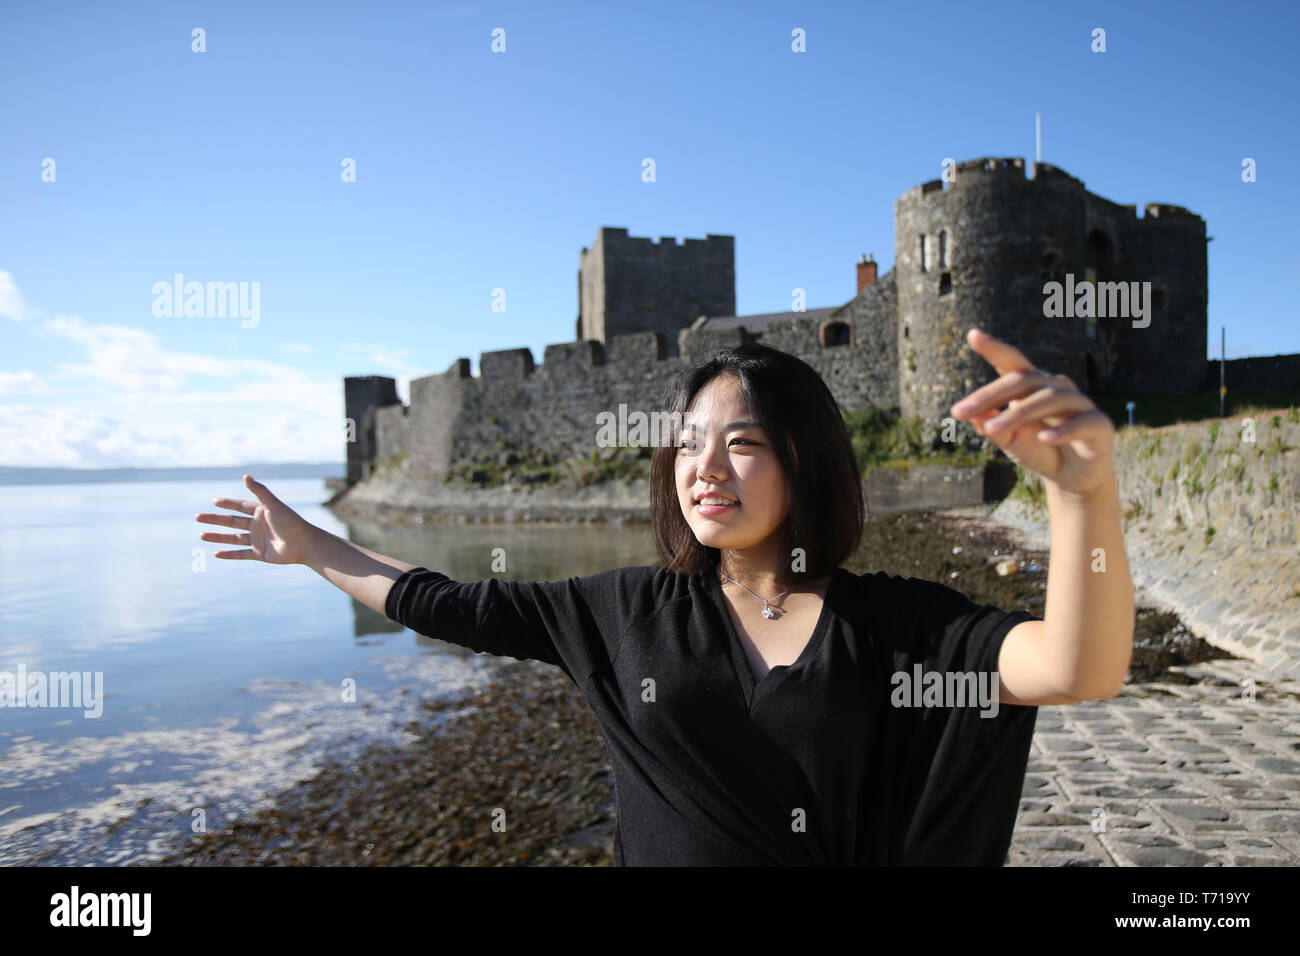 Los estudiantes internacionales tour alrededor de Irlanda del Norte, la mayoría de los hot spots turísticos alrededor del Condado de Antrim, Irlanda del Norte. Foto/Paul McErlane Foto de stock